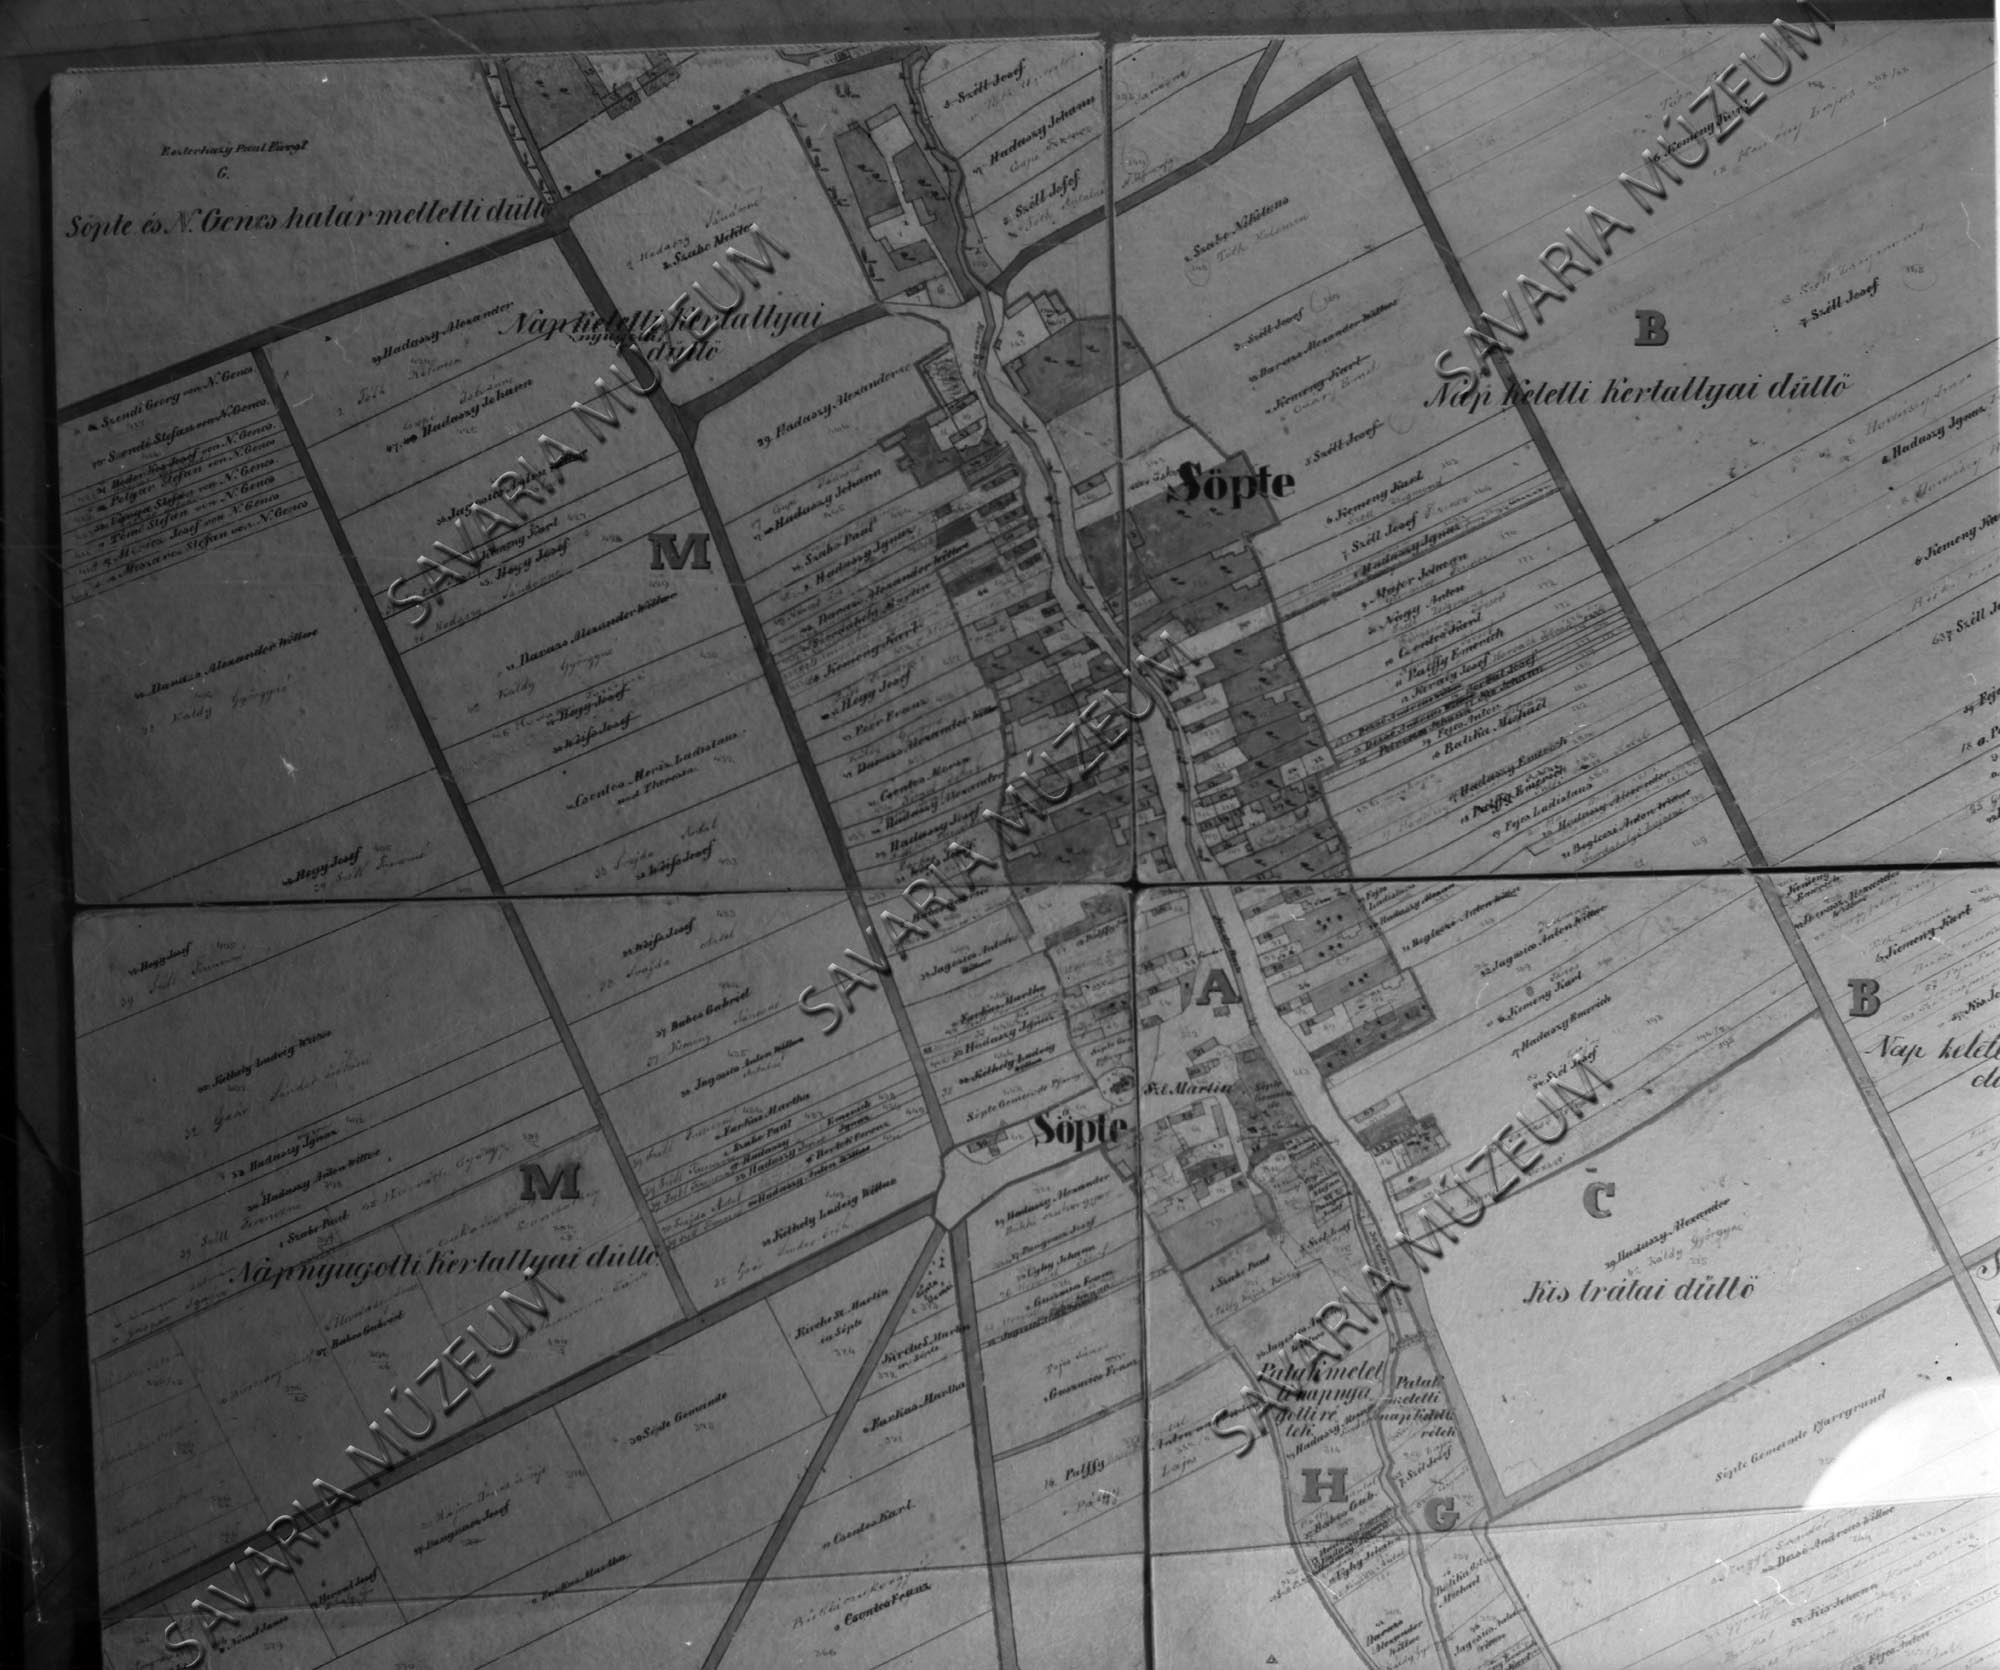 Söpte kataszteri térképe (Savaria Megyei Hatókörű Városi Múzeum, Szombathely CC BY-NC-SA)